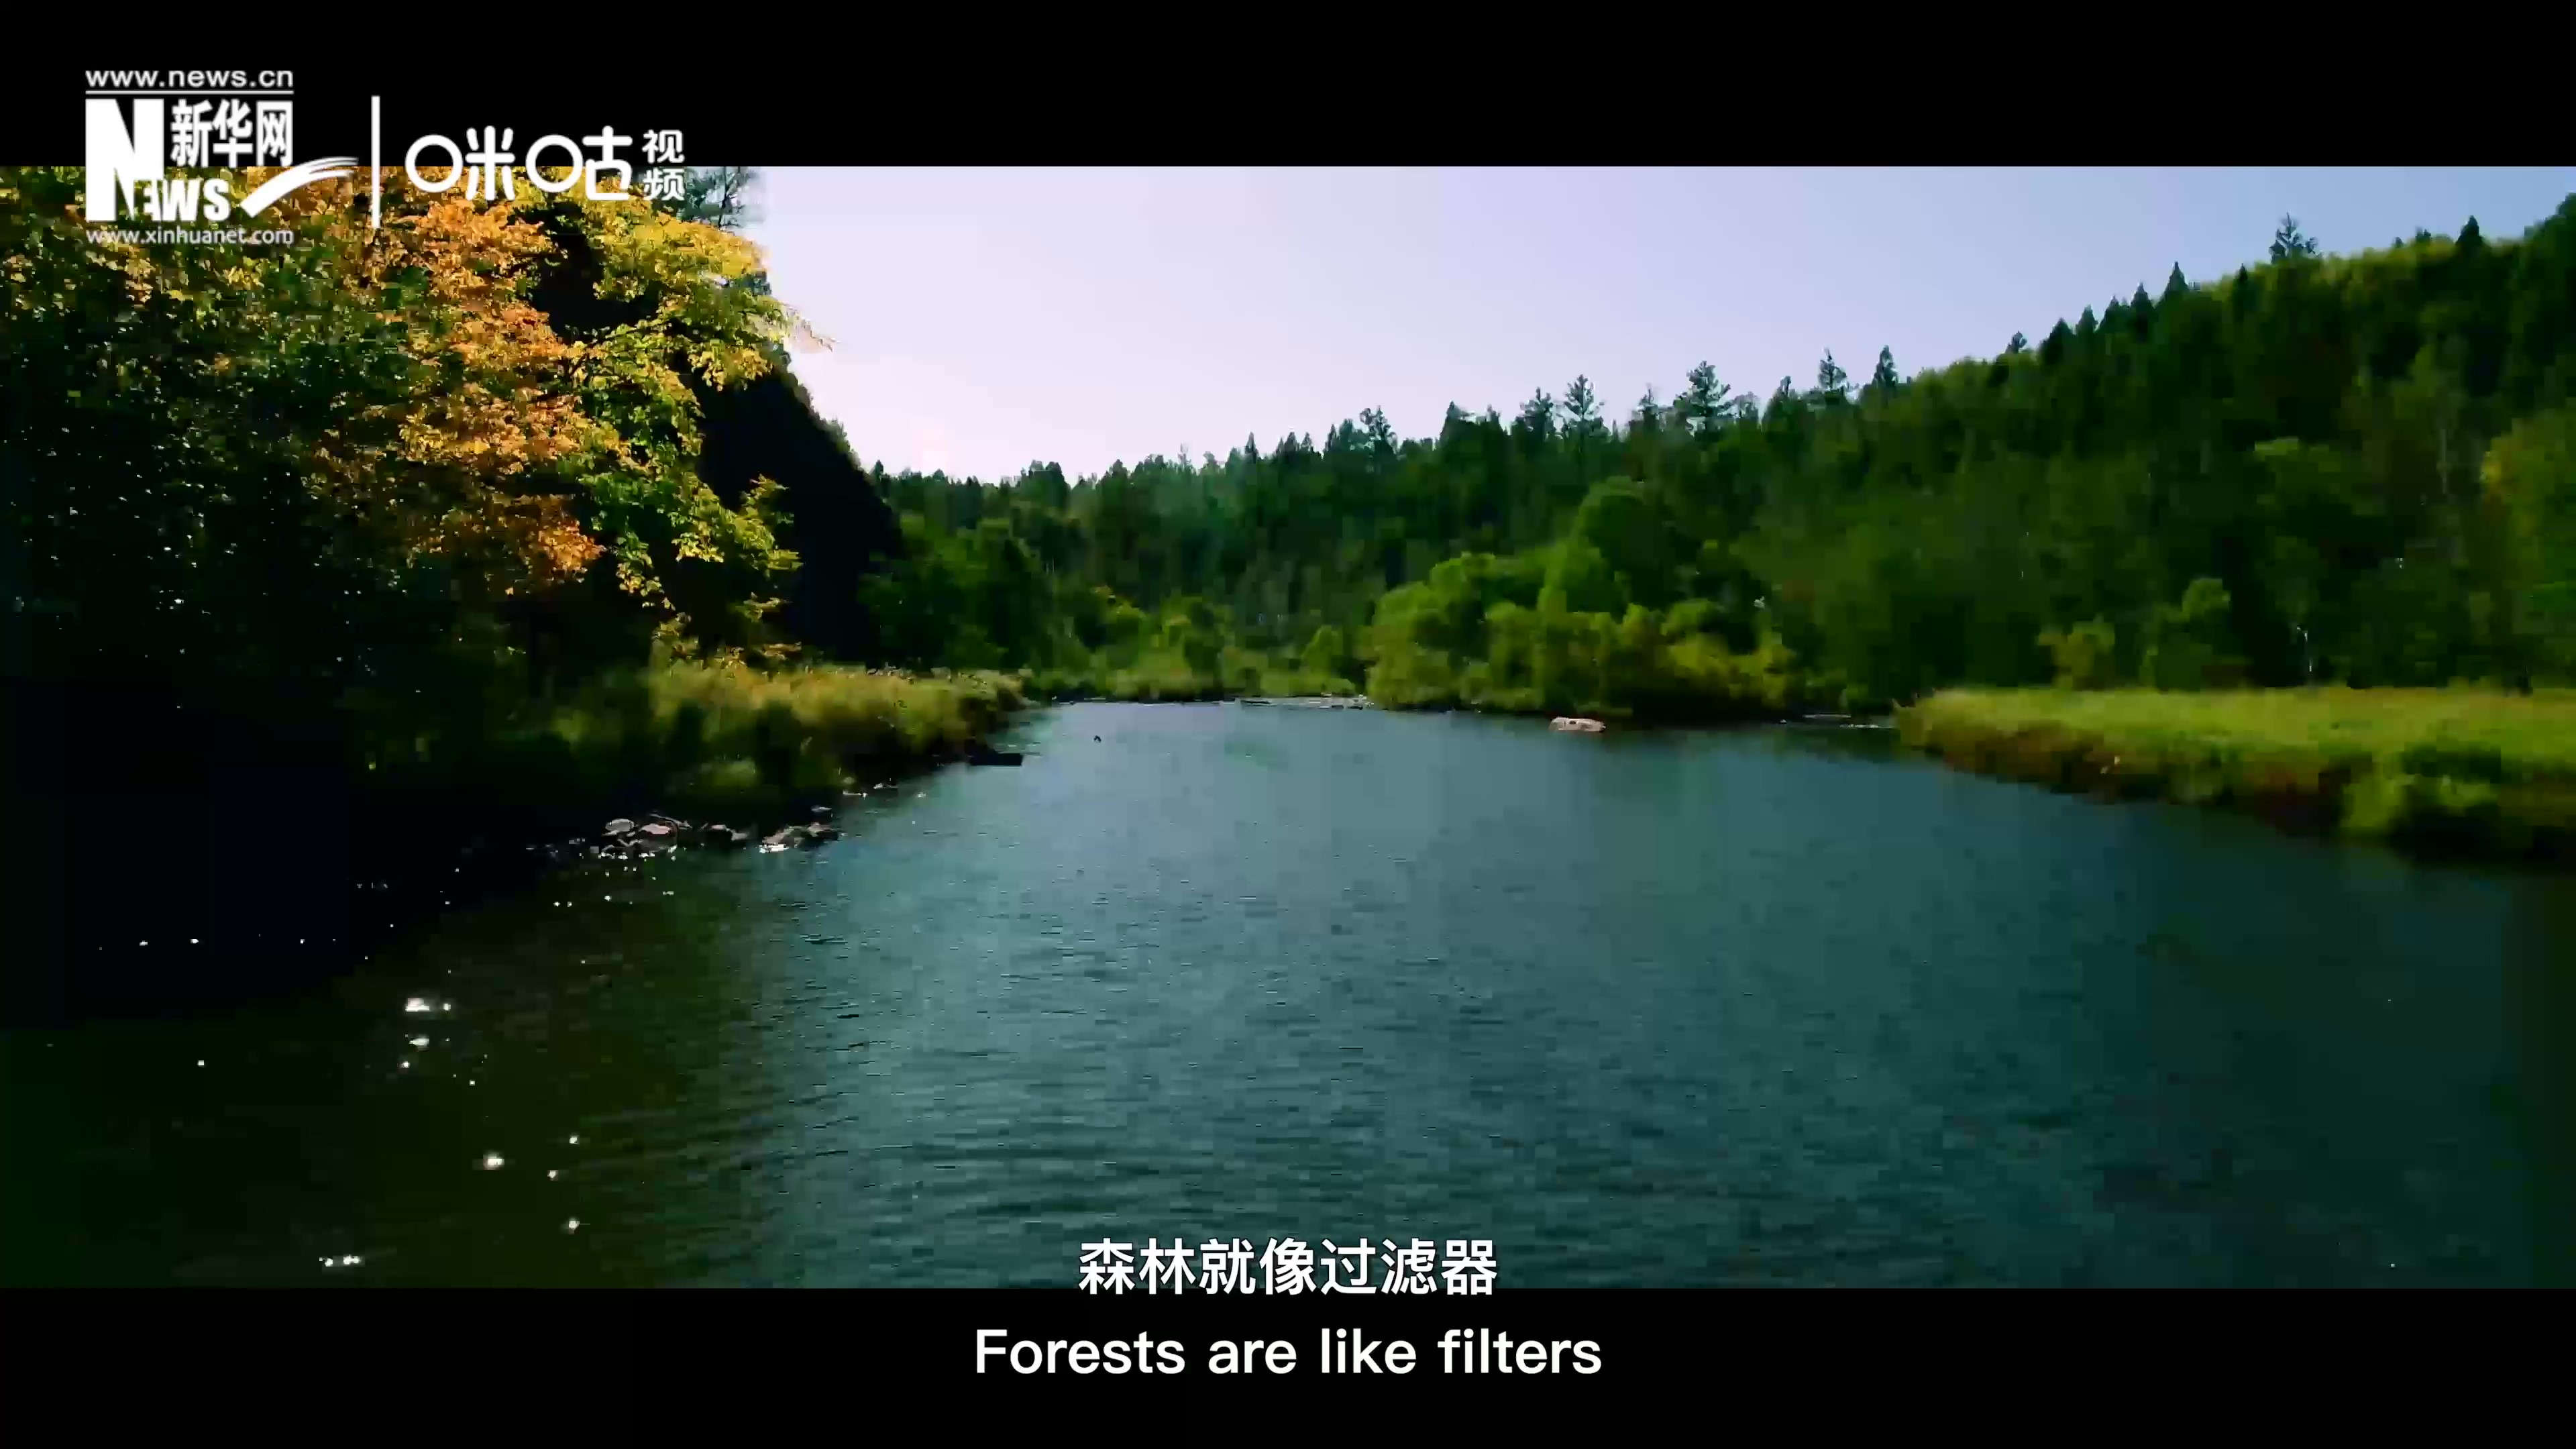 森林為我們提供對生命至關重要的清潔水源